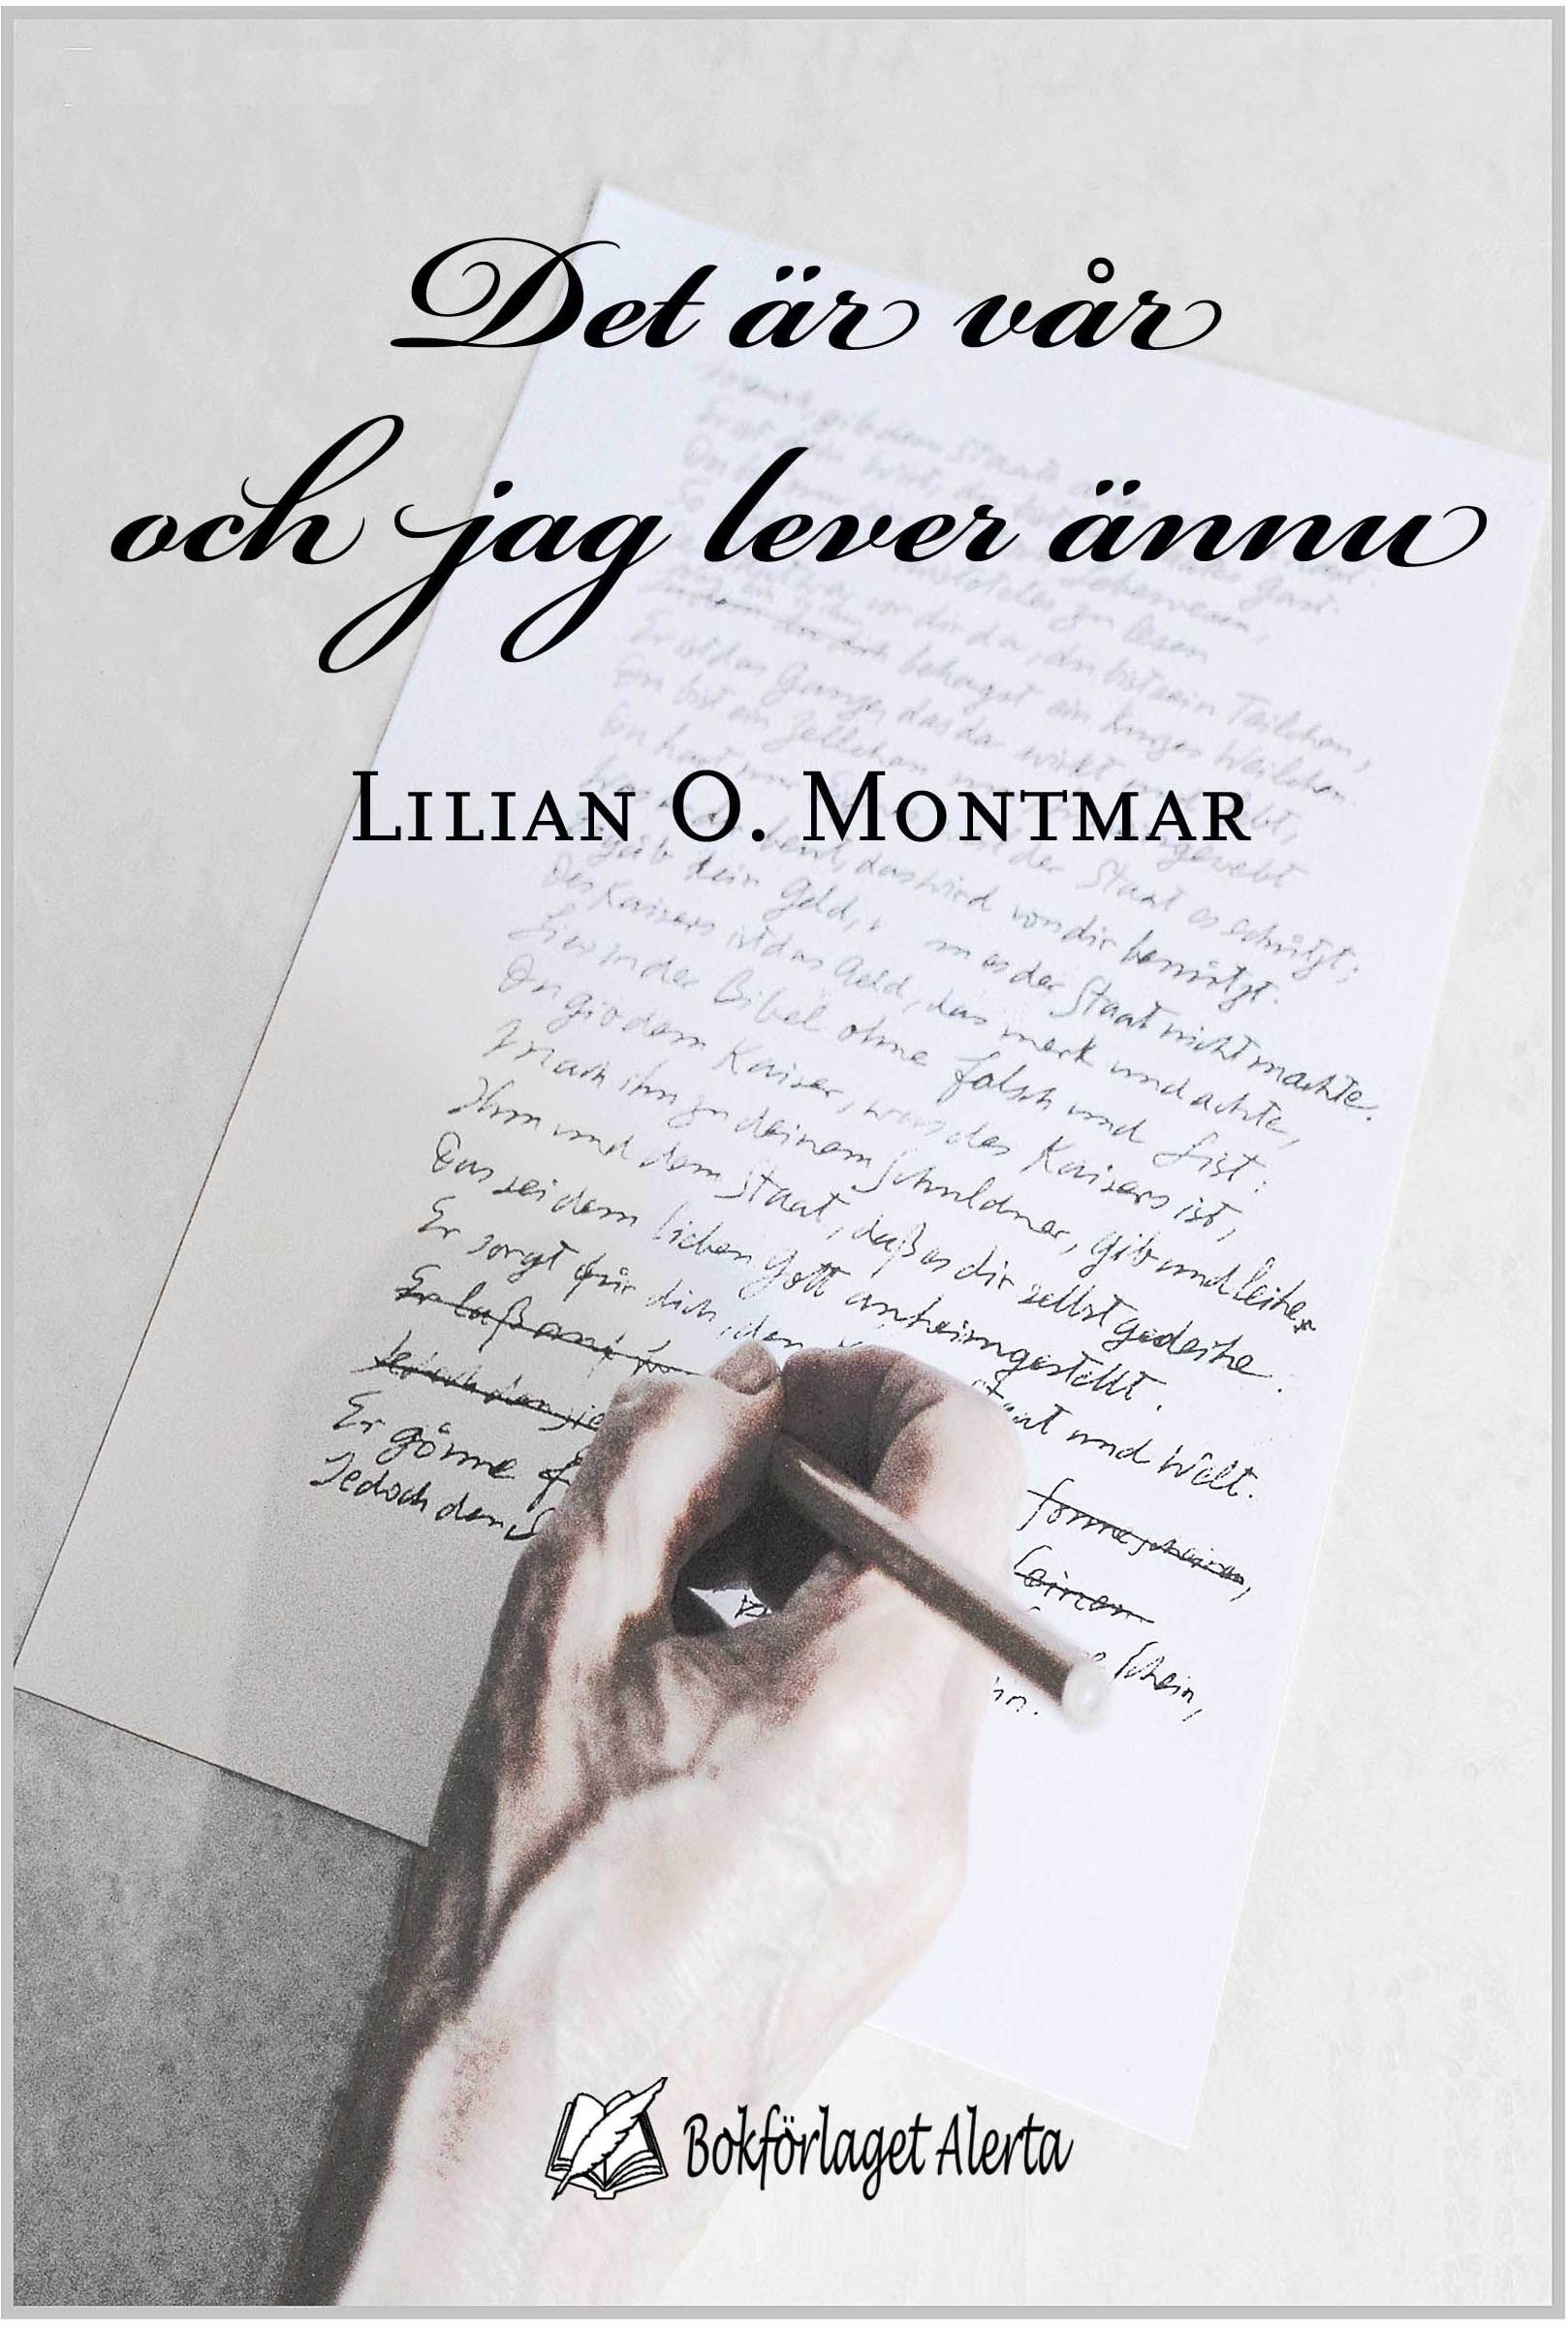 Det är vår och jag lever ännu, e-bok av Lilian O. Montmar